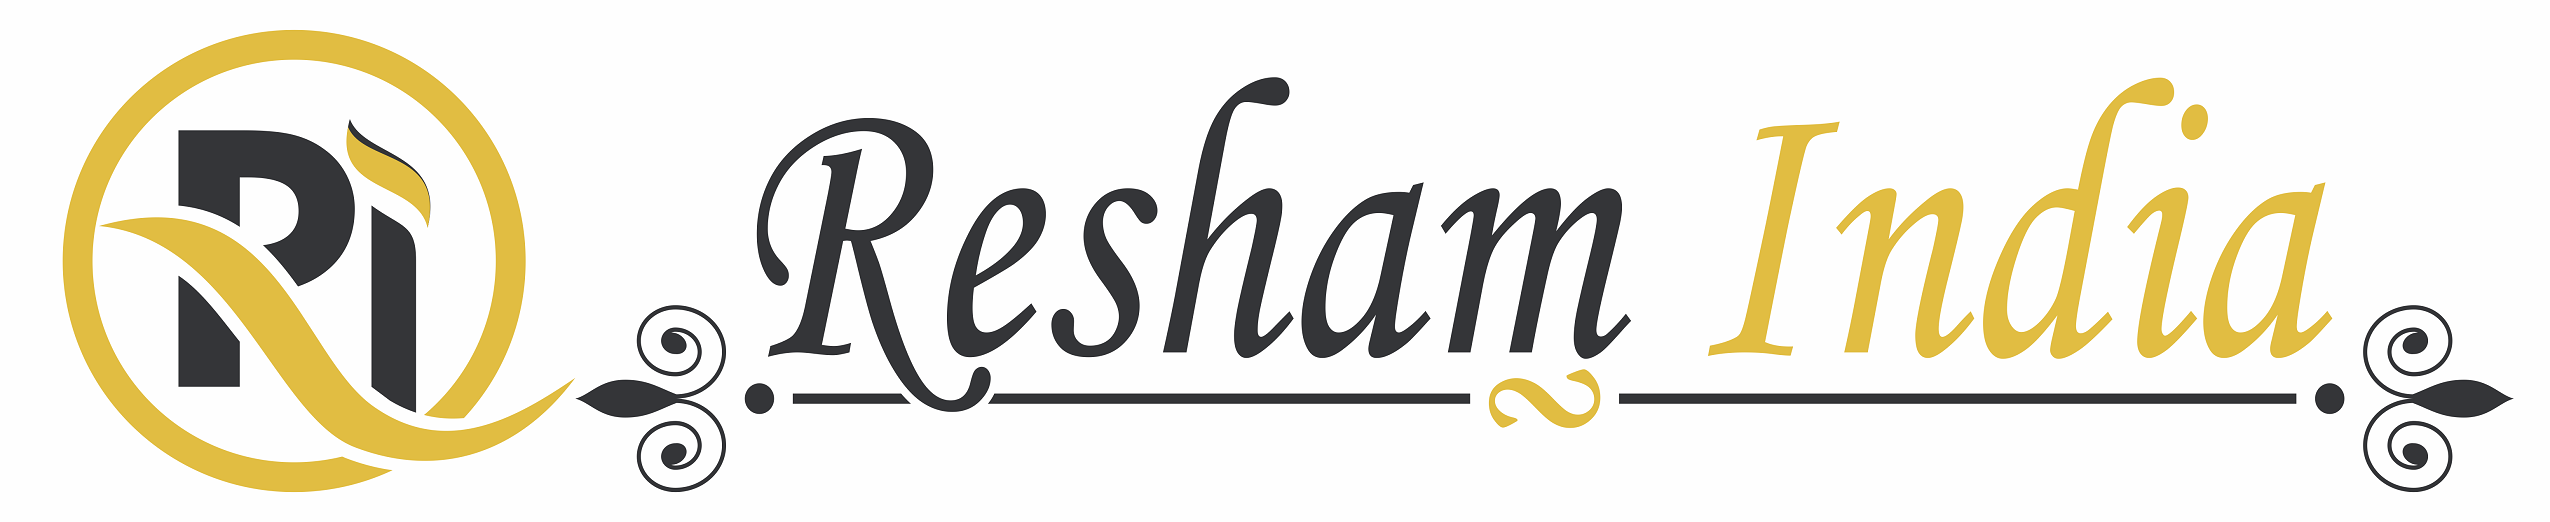 Resham India Logo